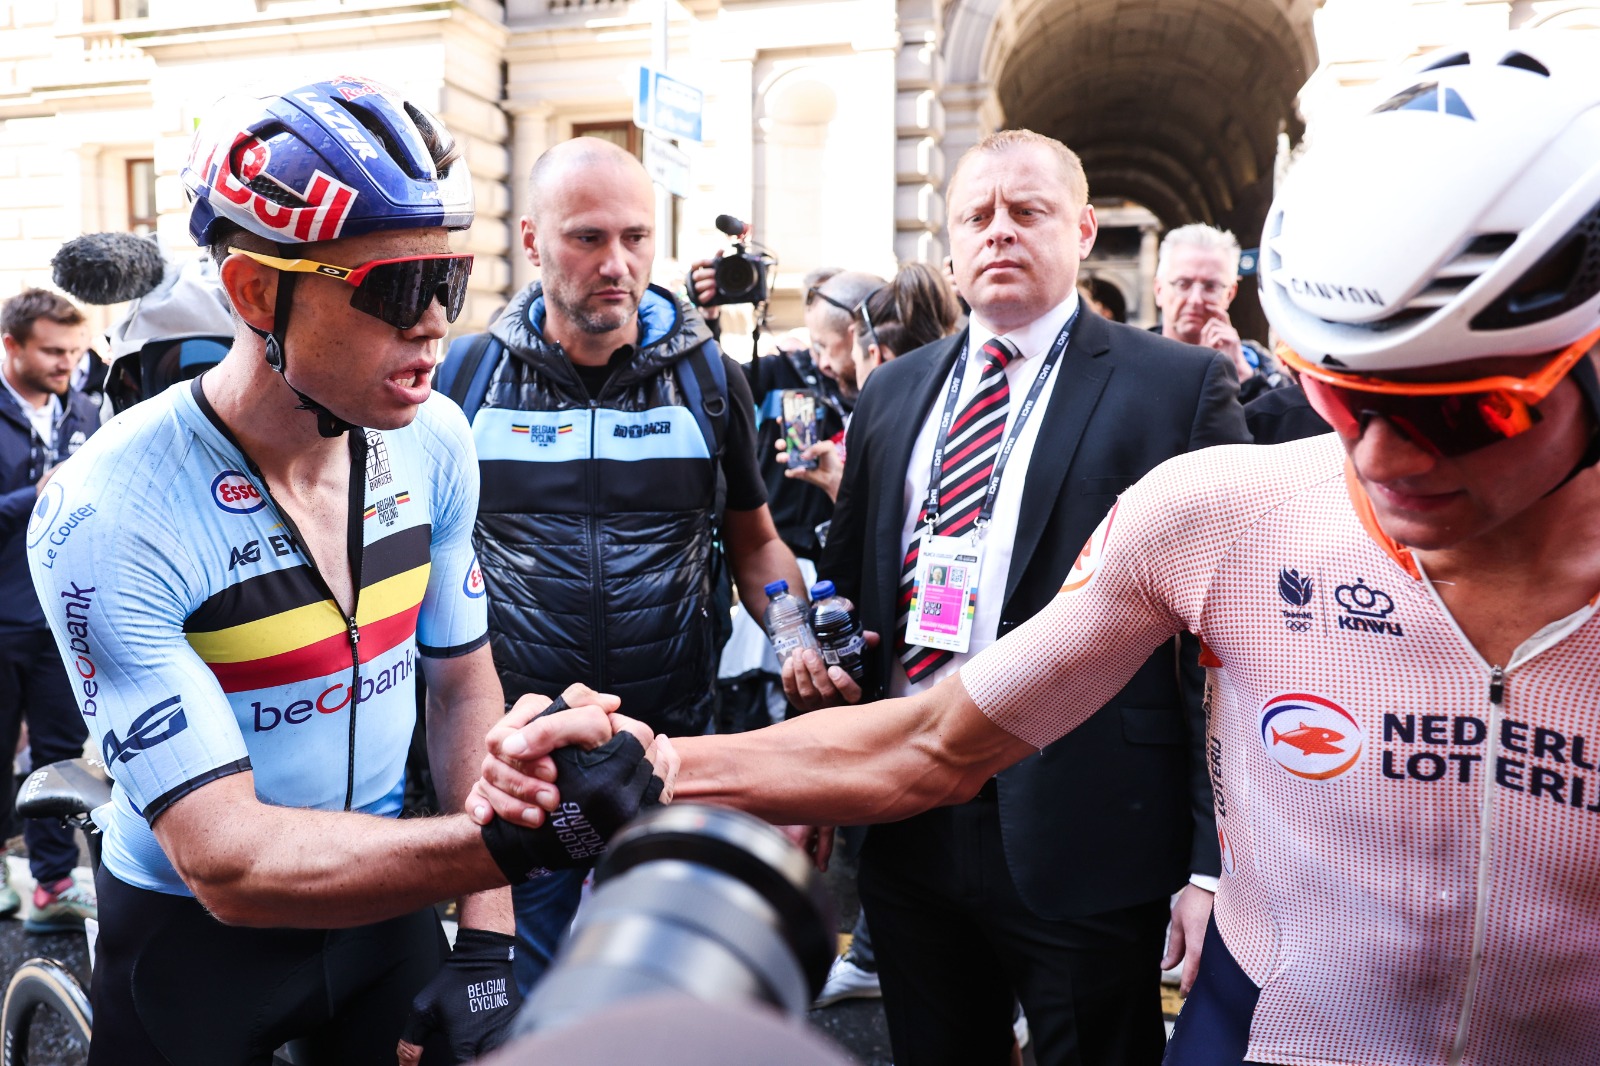 Ciclismo, i favoriti della prova in linea maschile alle Olimpiadi: Mathieu van der Poel vuole l’oro, occhio a van Aert